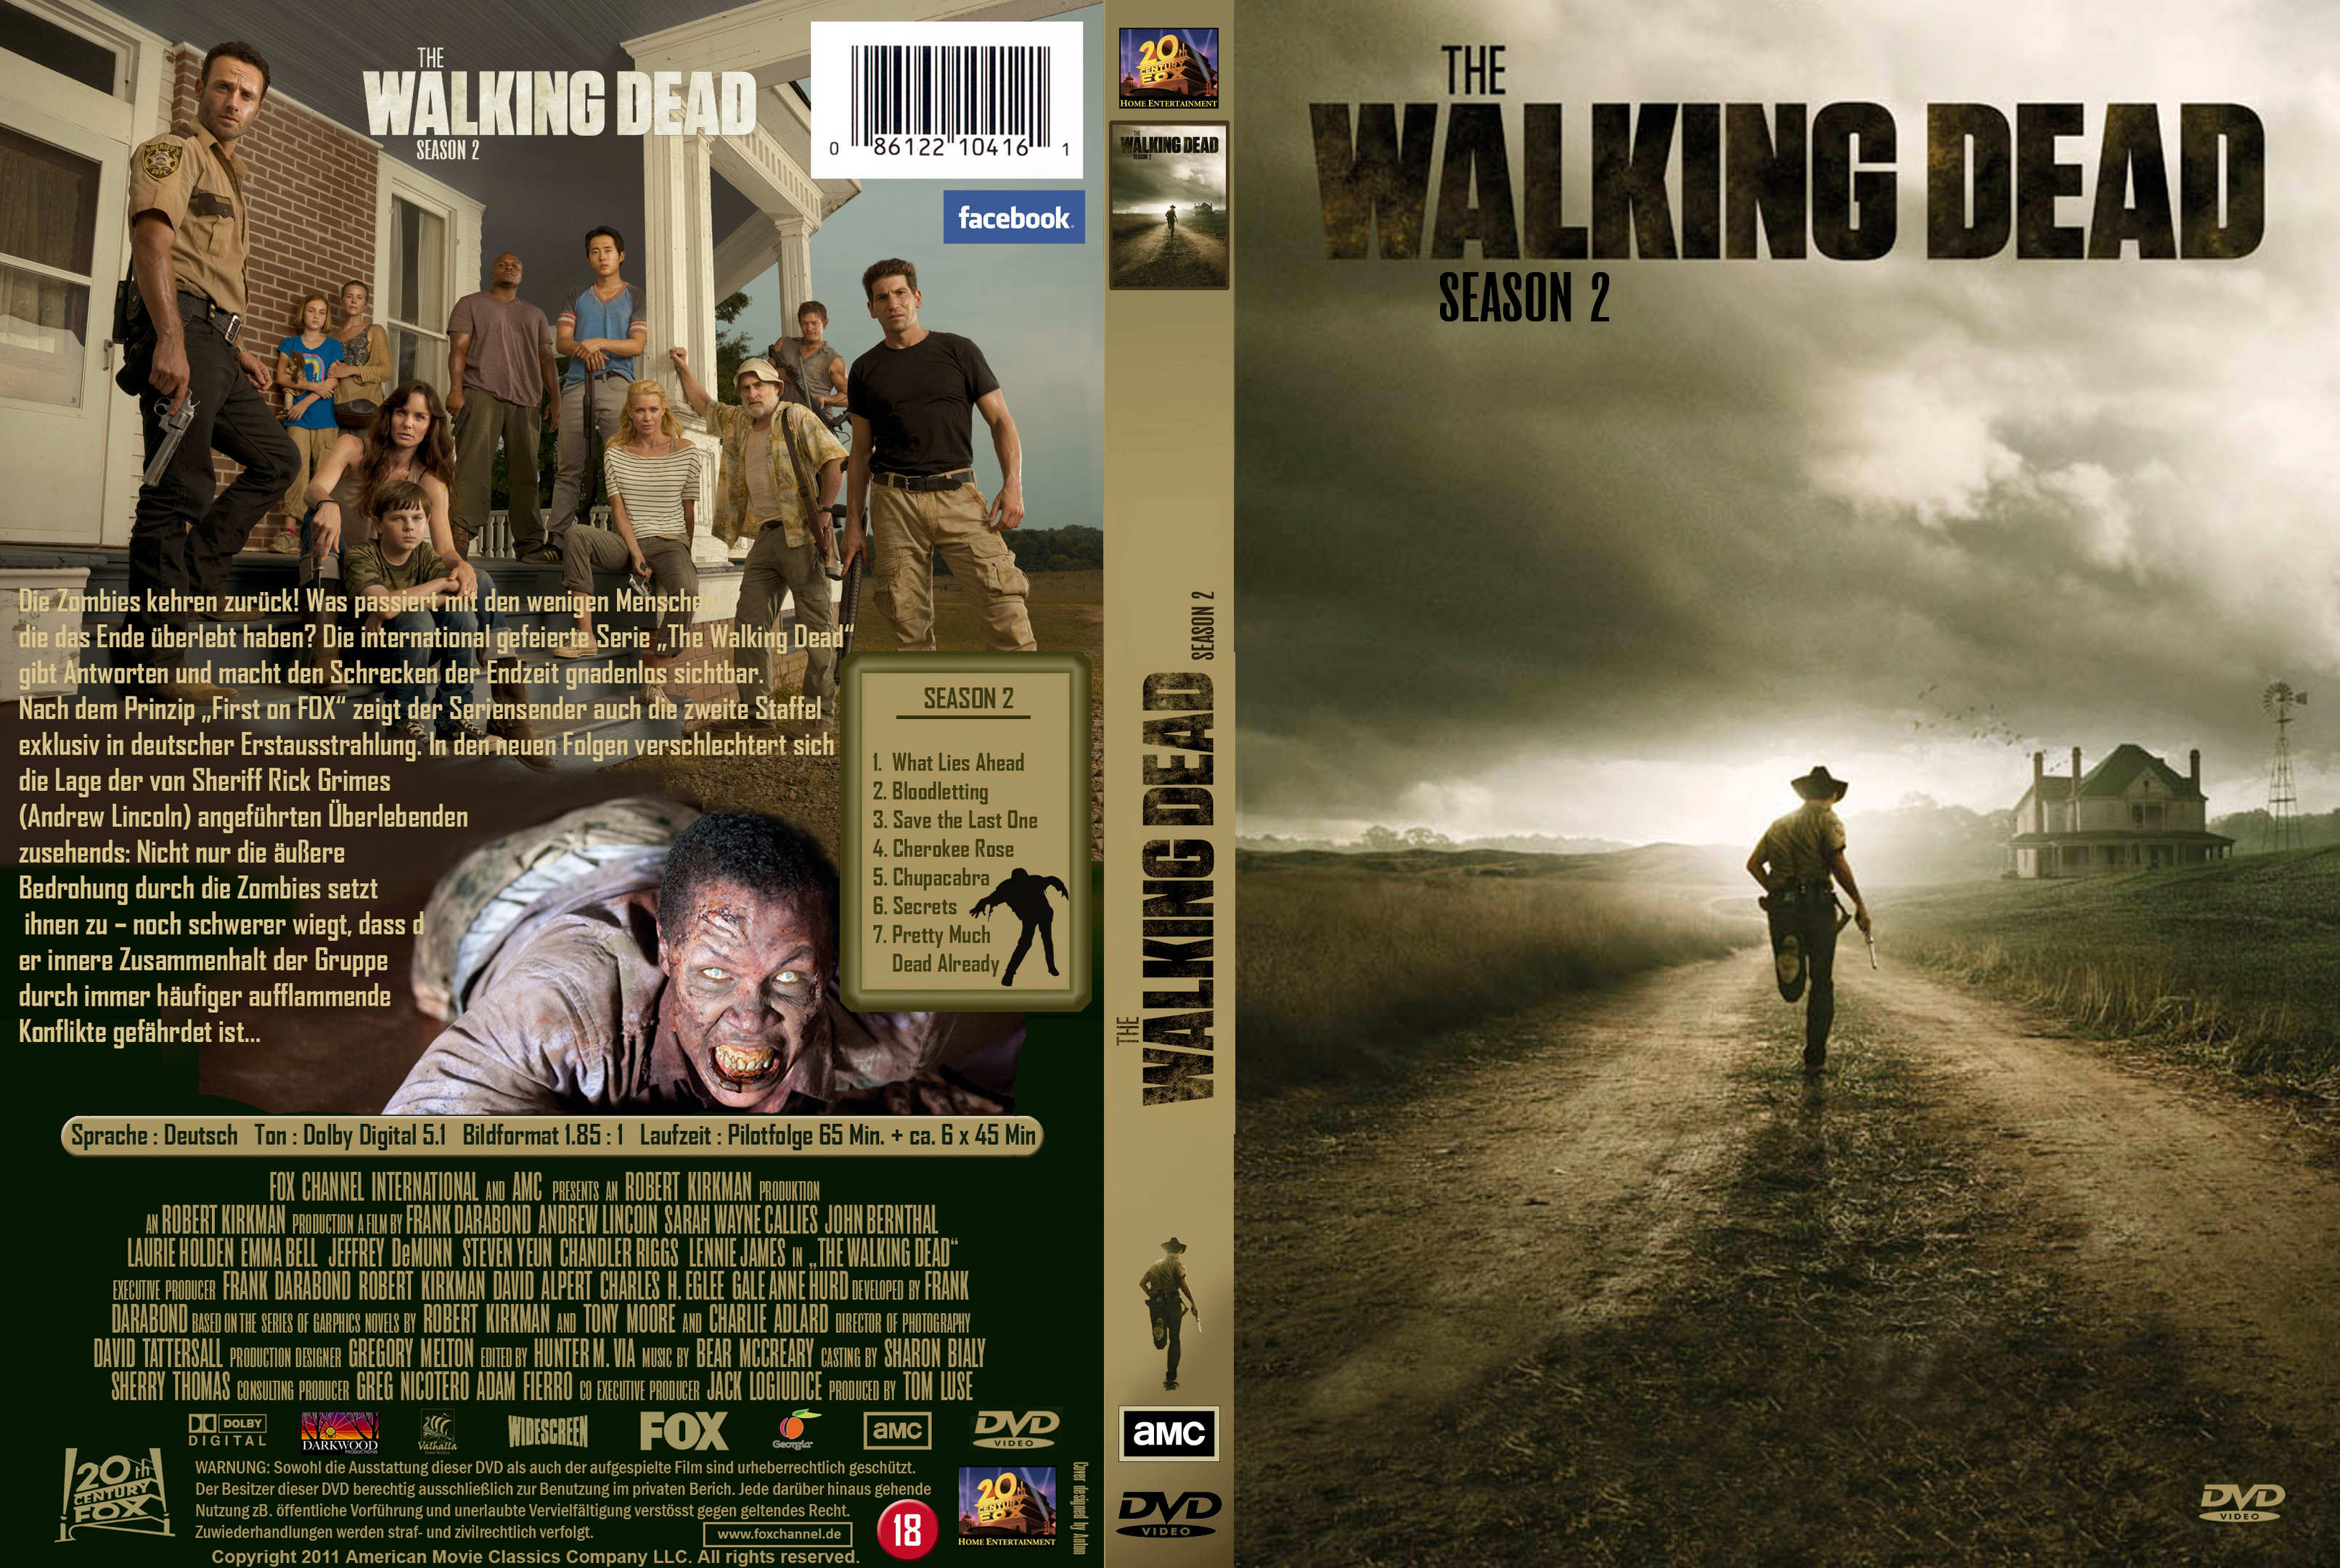 The Walking Dead Season 2 Dvd Cover